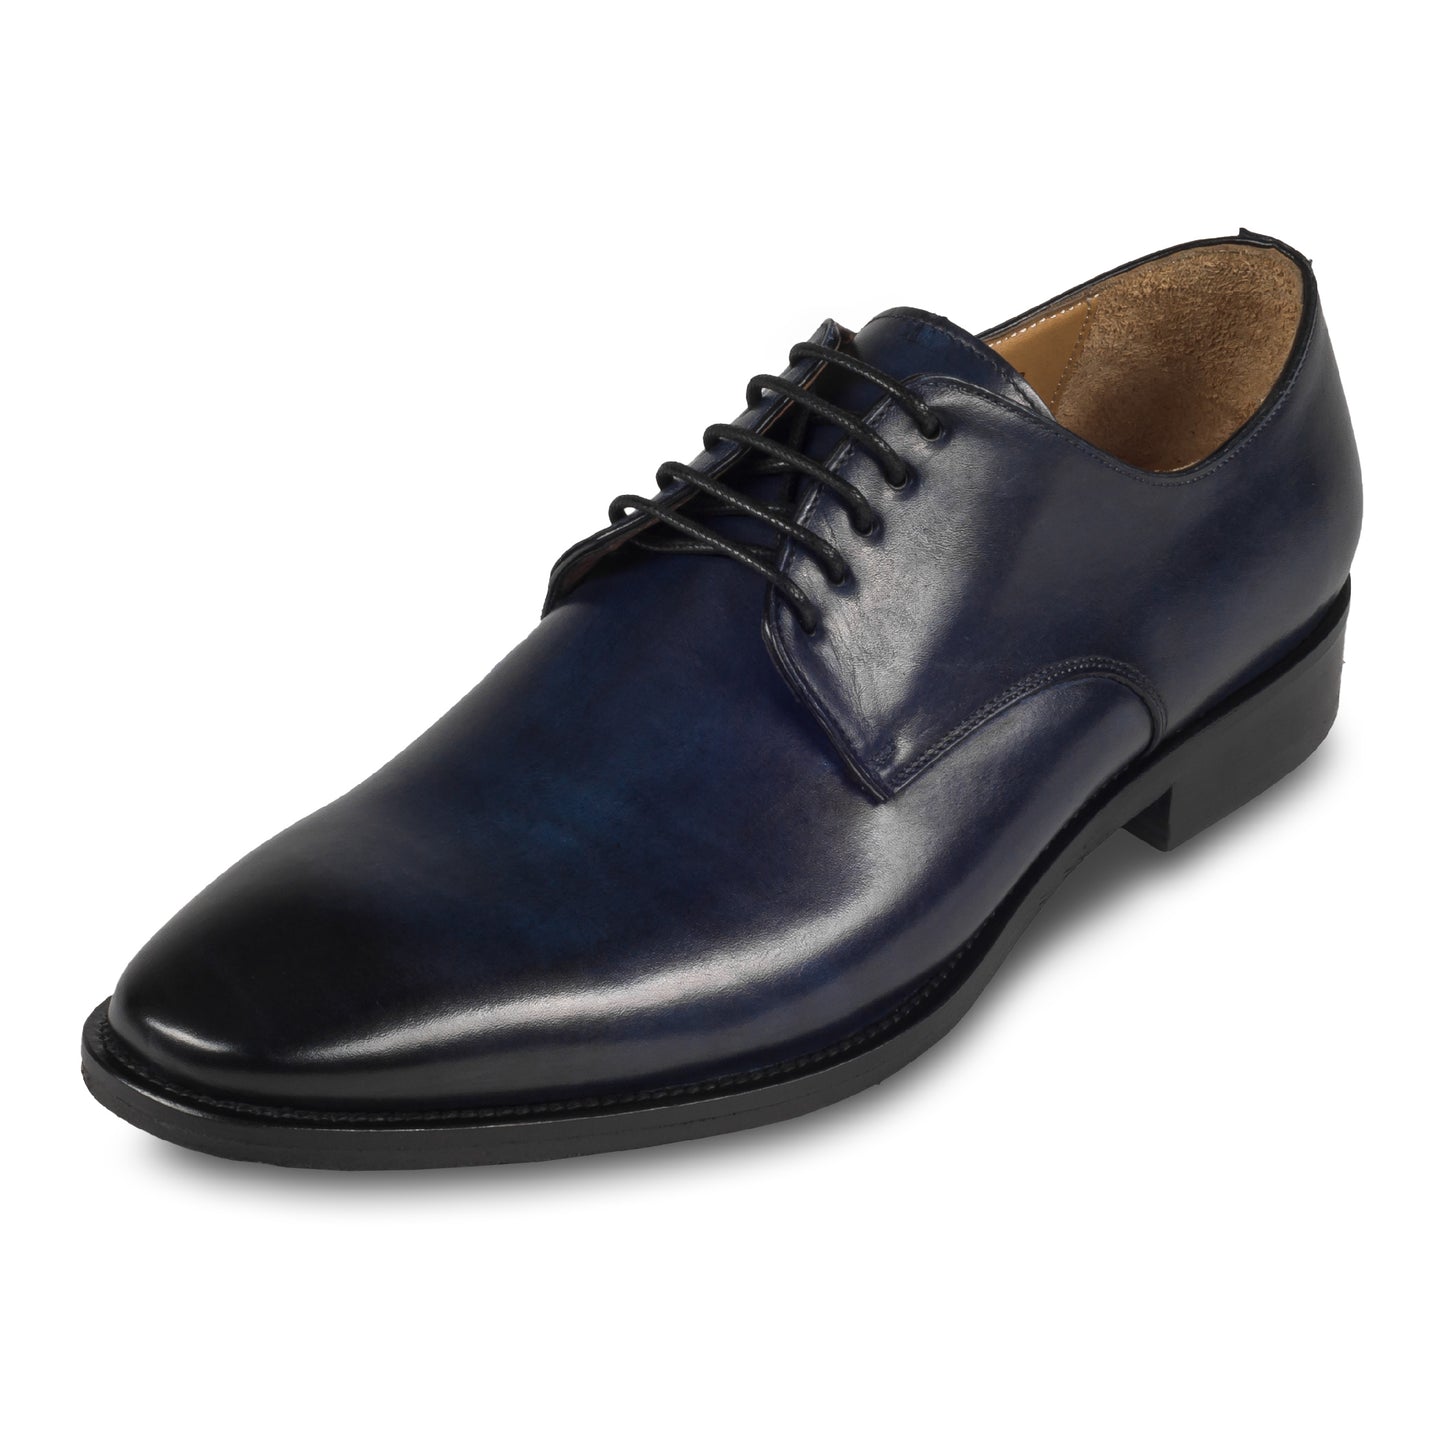 BRECOS – Italienische Herren Anzugschuhe, Plain Derby Schnürer in dunkel blau. Handgefertigt und durchgenäht. Schräge Ansicht linker Schuh.